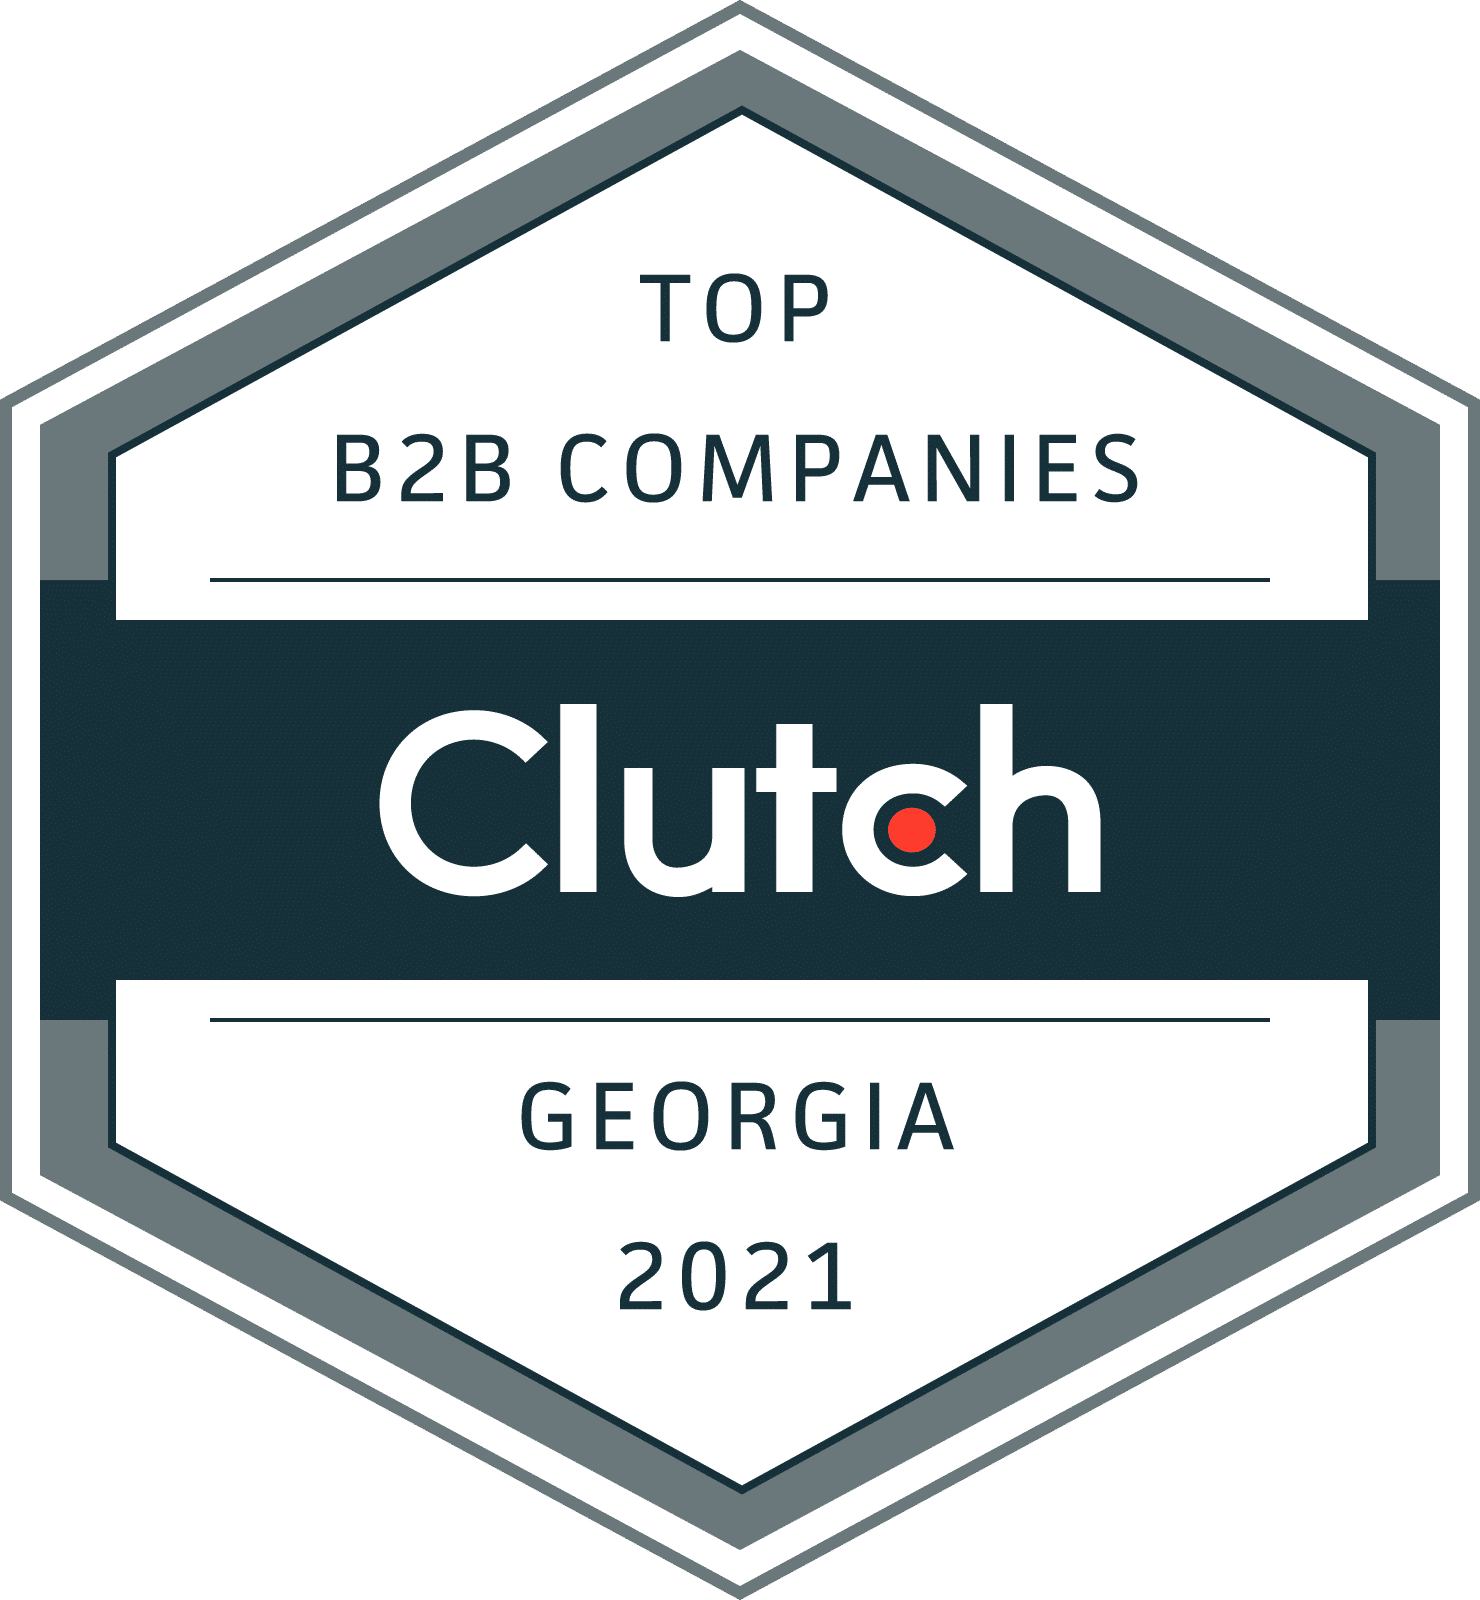 Top B2B Company in Georgia 2021